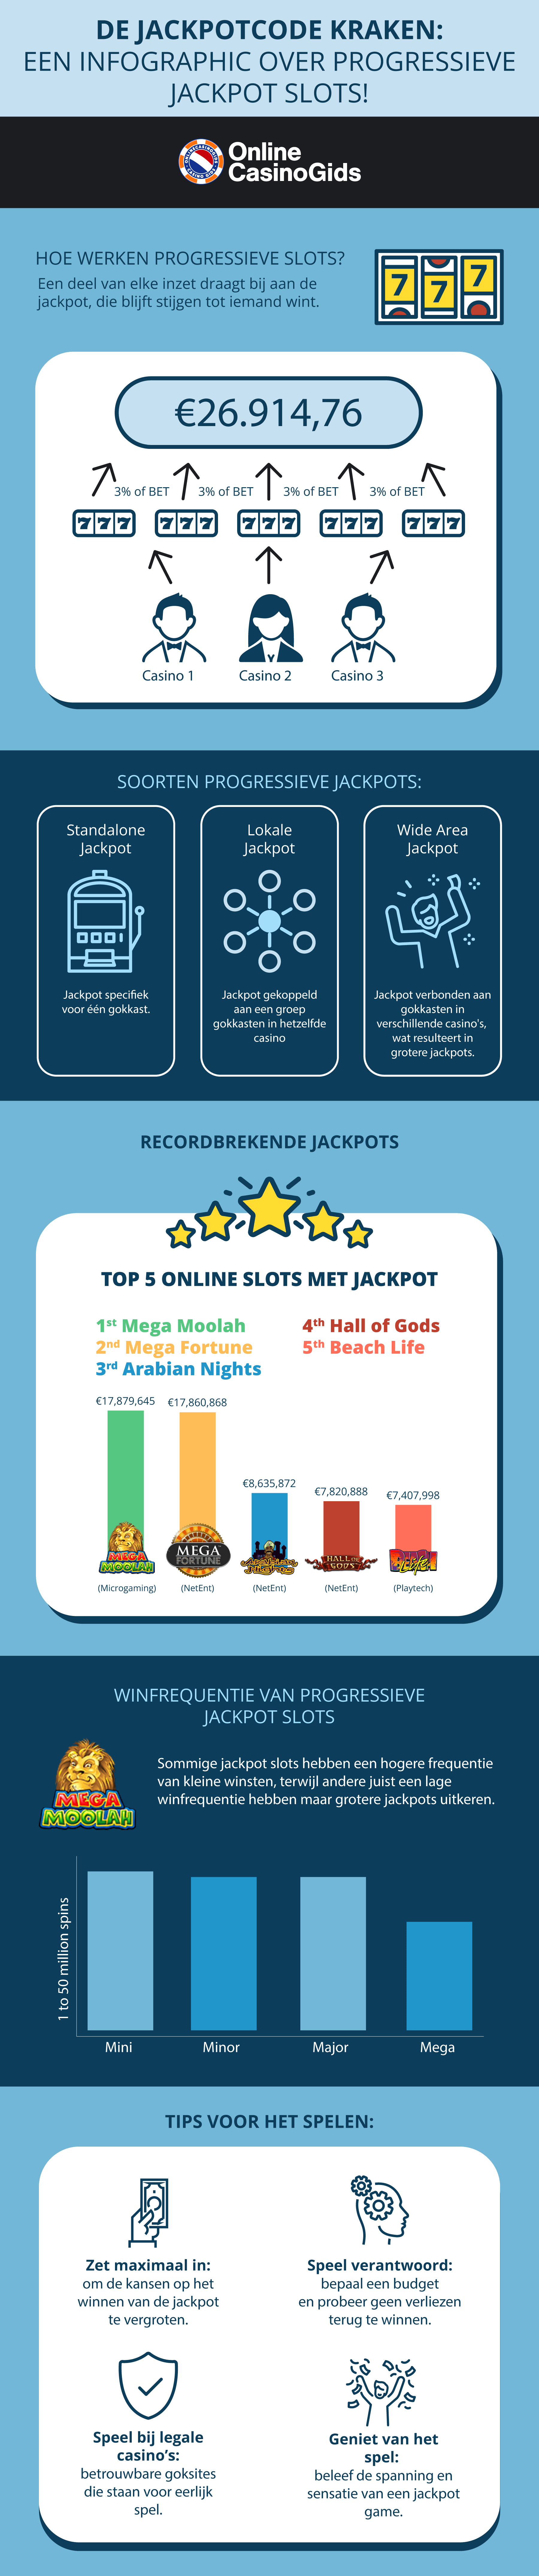 Alle info over progressieve jackpot slots in een infographic!
